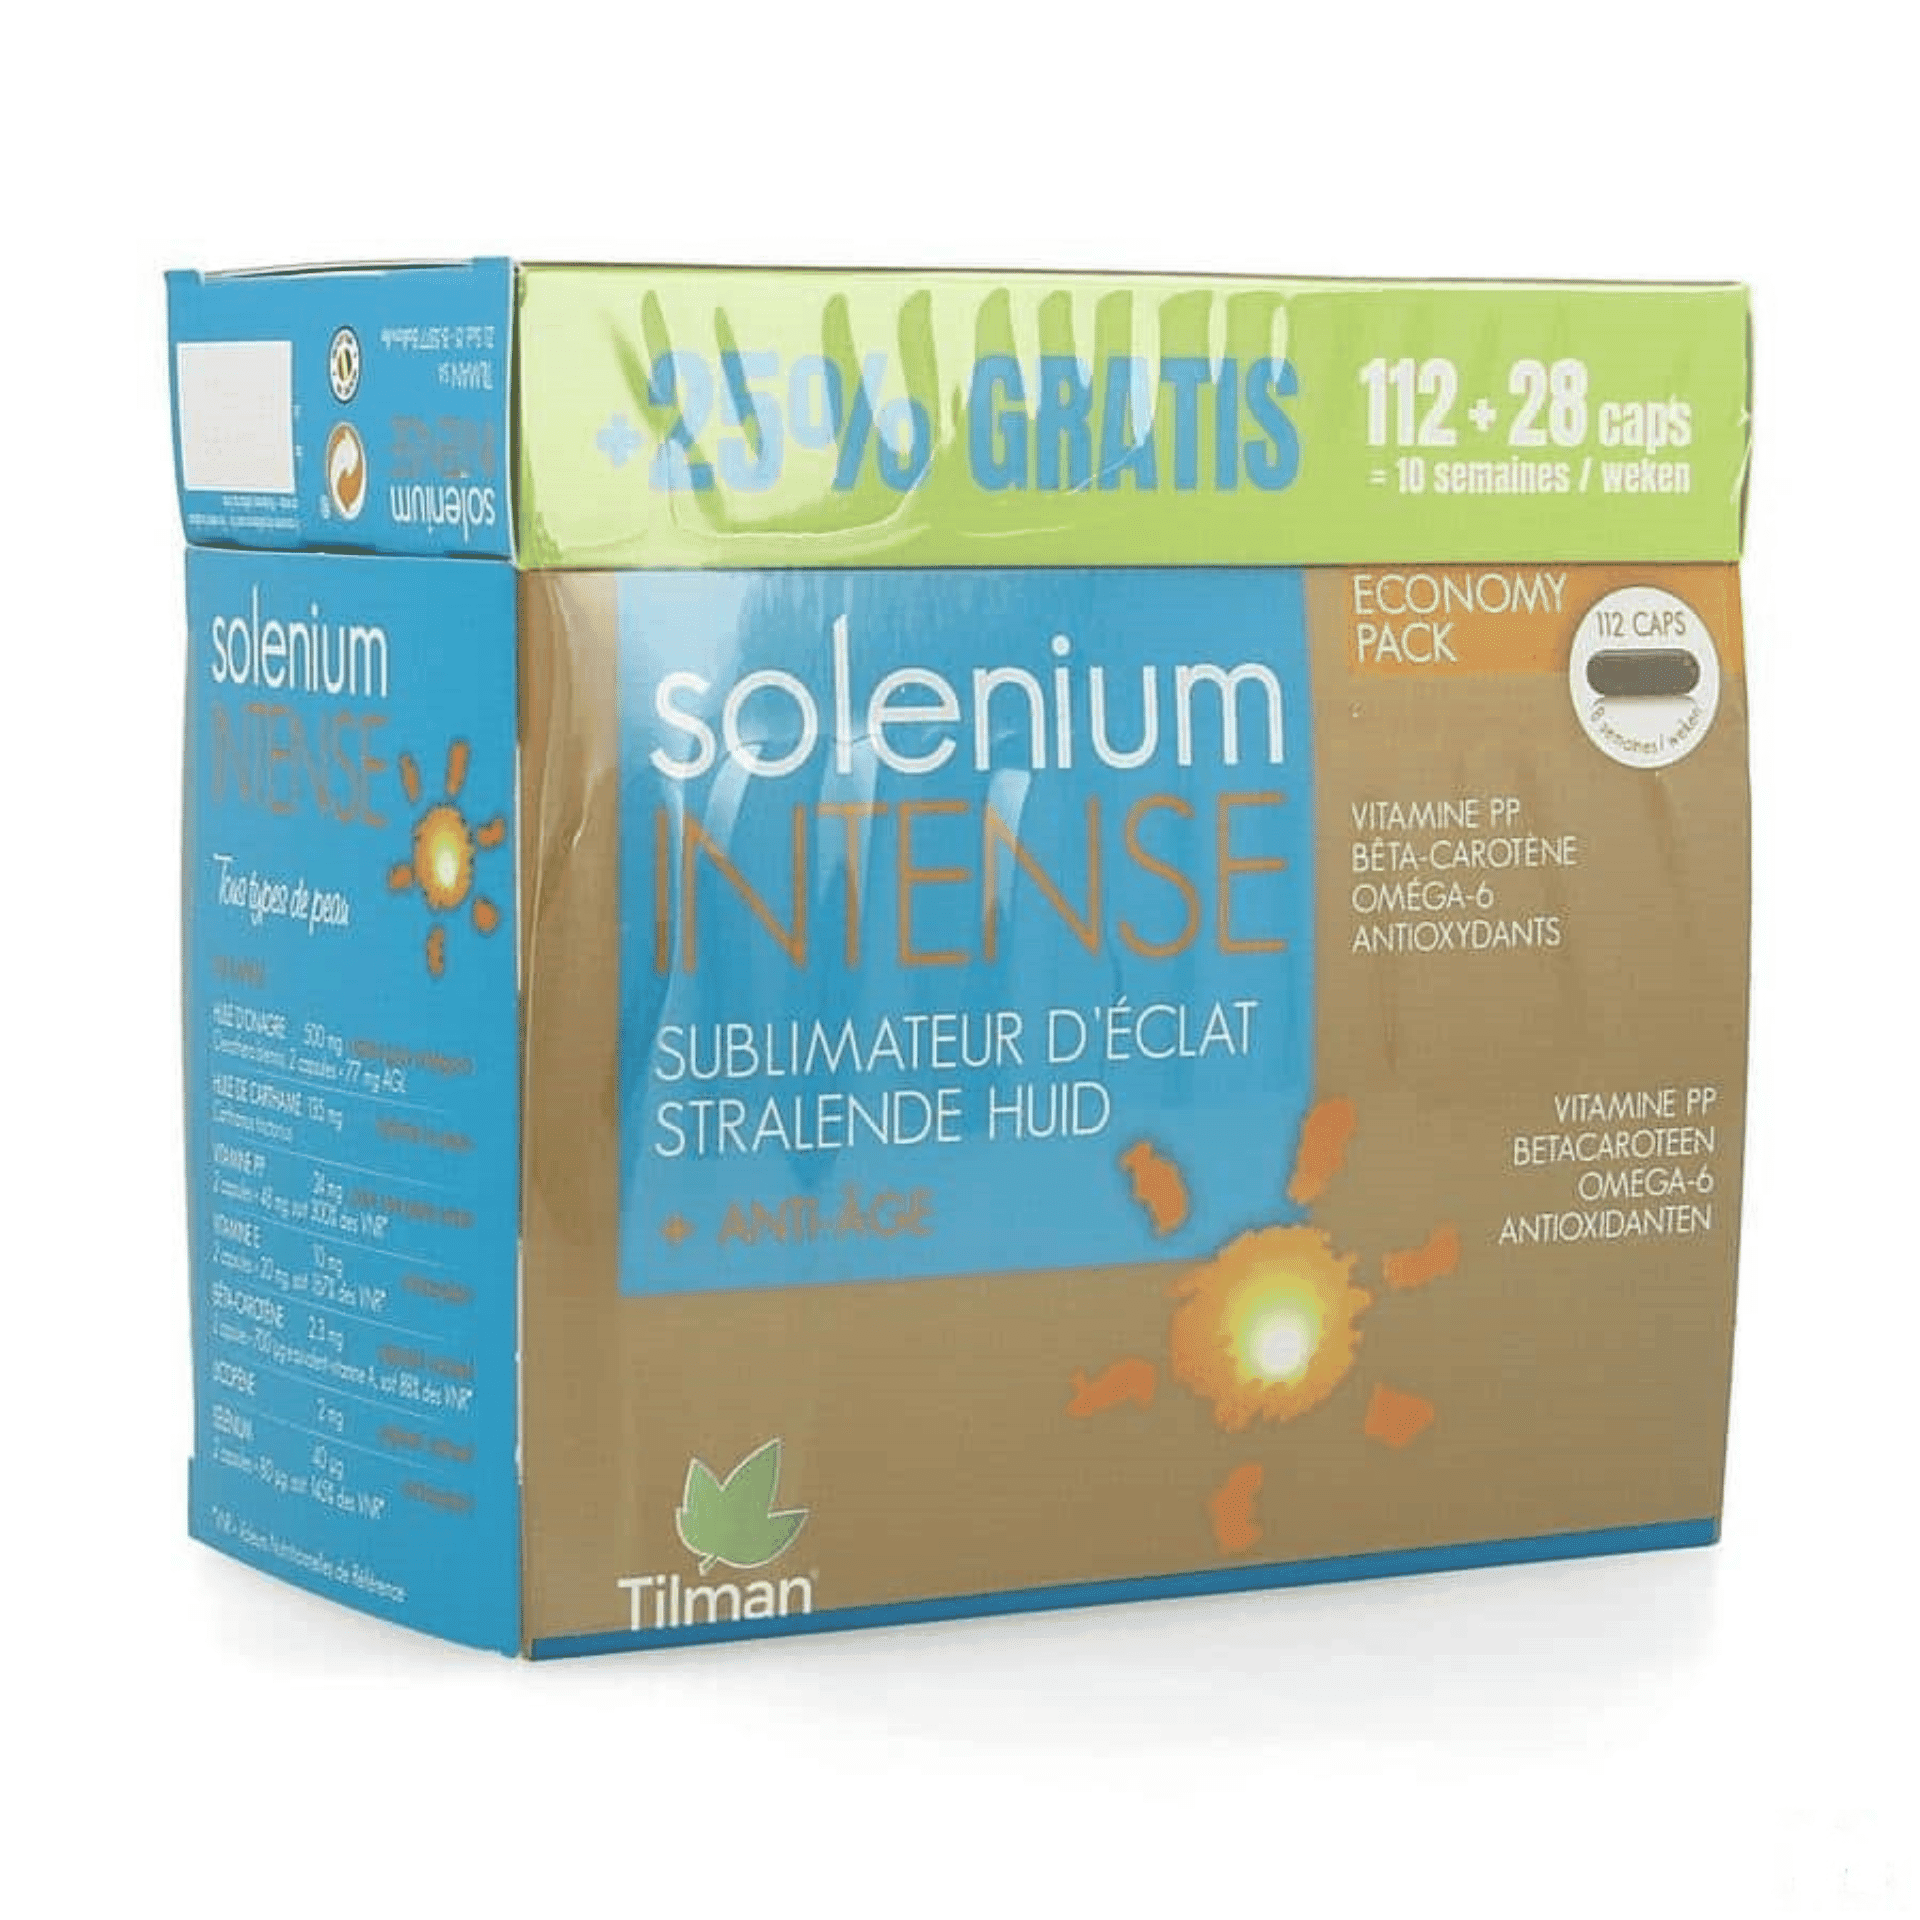 Solenium Intense Promo 112 capsules + 28 capsules gratis